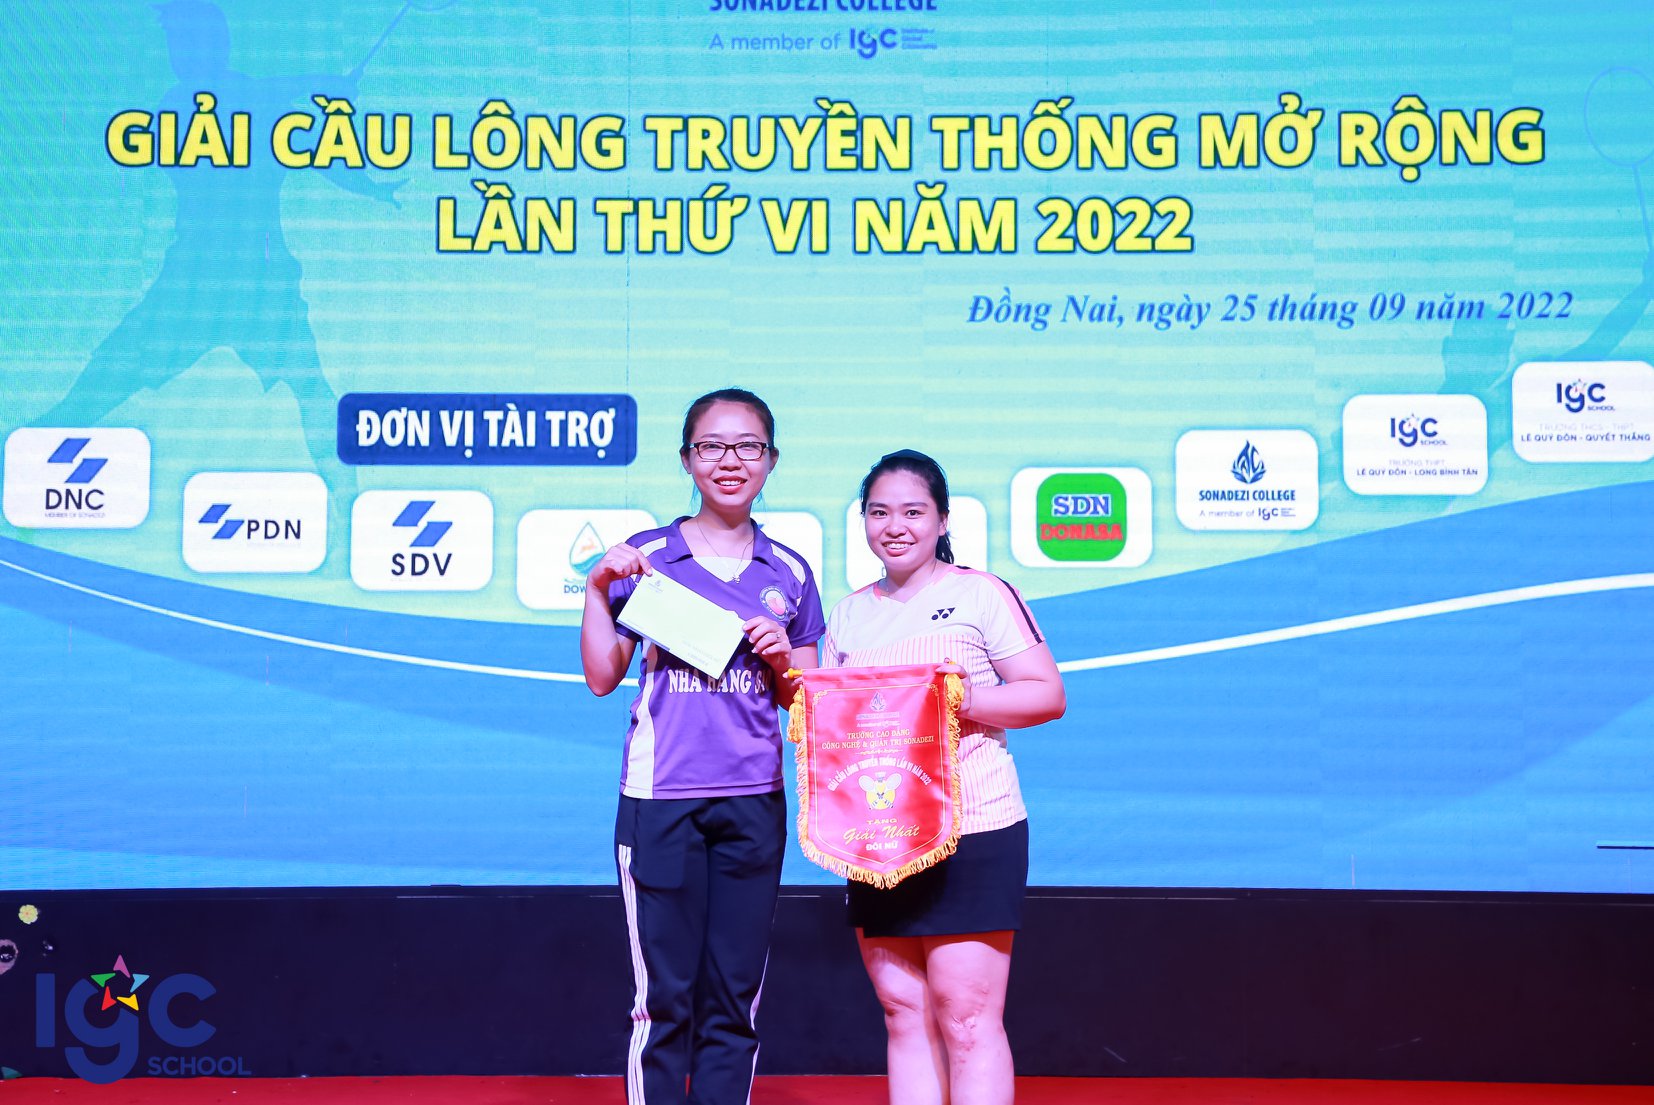 Chúc mừng cô Phan Nguyễn Ngọc Quyên & cô Tăng Thị Kim Khánh đã xuất sắc giành Giải Nhất - Đôi nữ tại Giải cầu lông truyền thống Sonadezi College lần VI mở rộng 2022